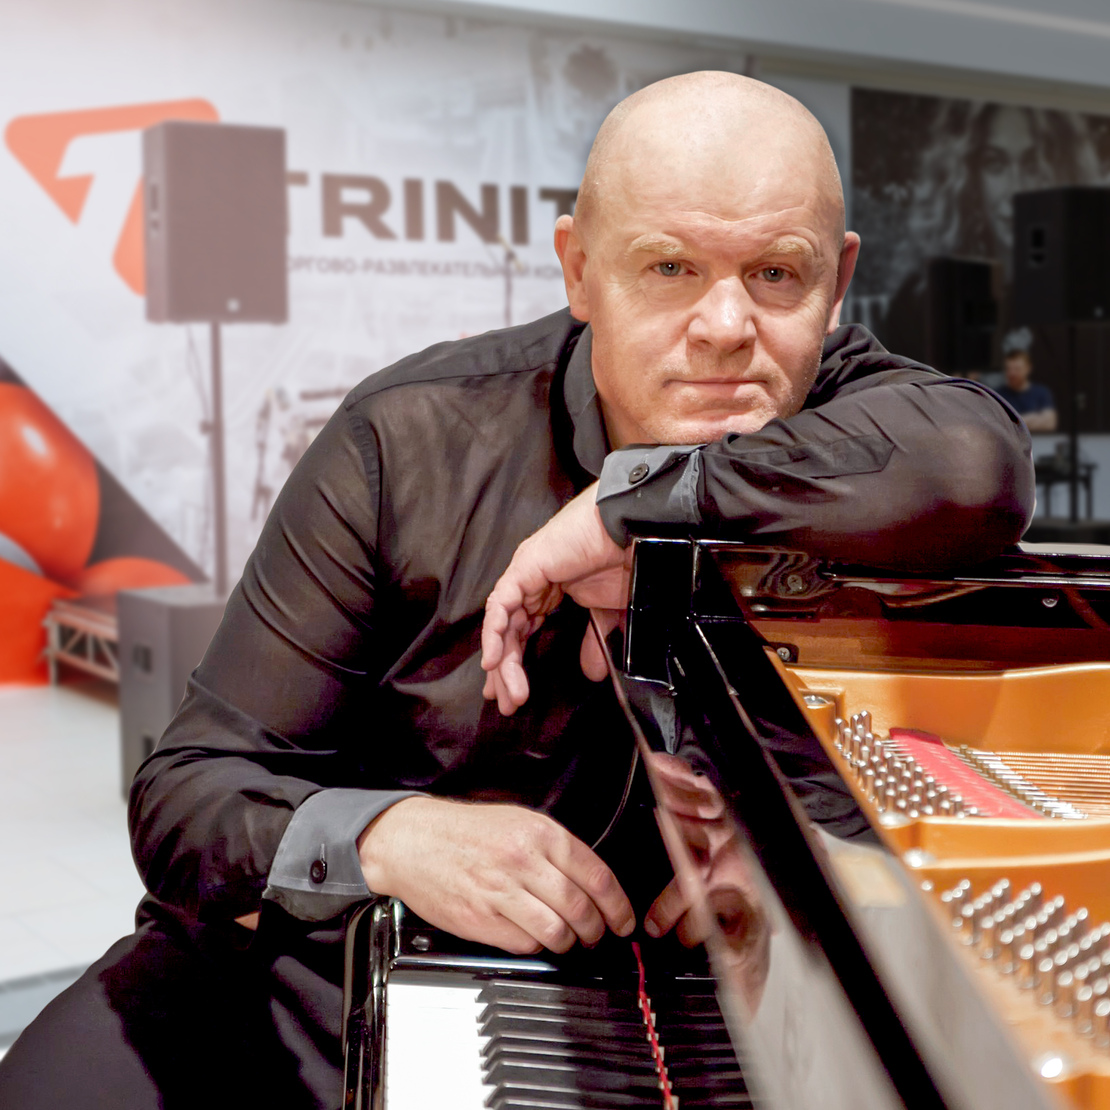 5 мая в 18.00 в атриуме ТРК состоится выступление известного пианиста Игоря Гиро. Мы предлагаем замедлиться и после шопинга выпить чашечку фиалкового латте под звуки рояля/